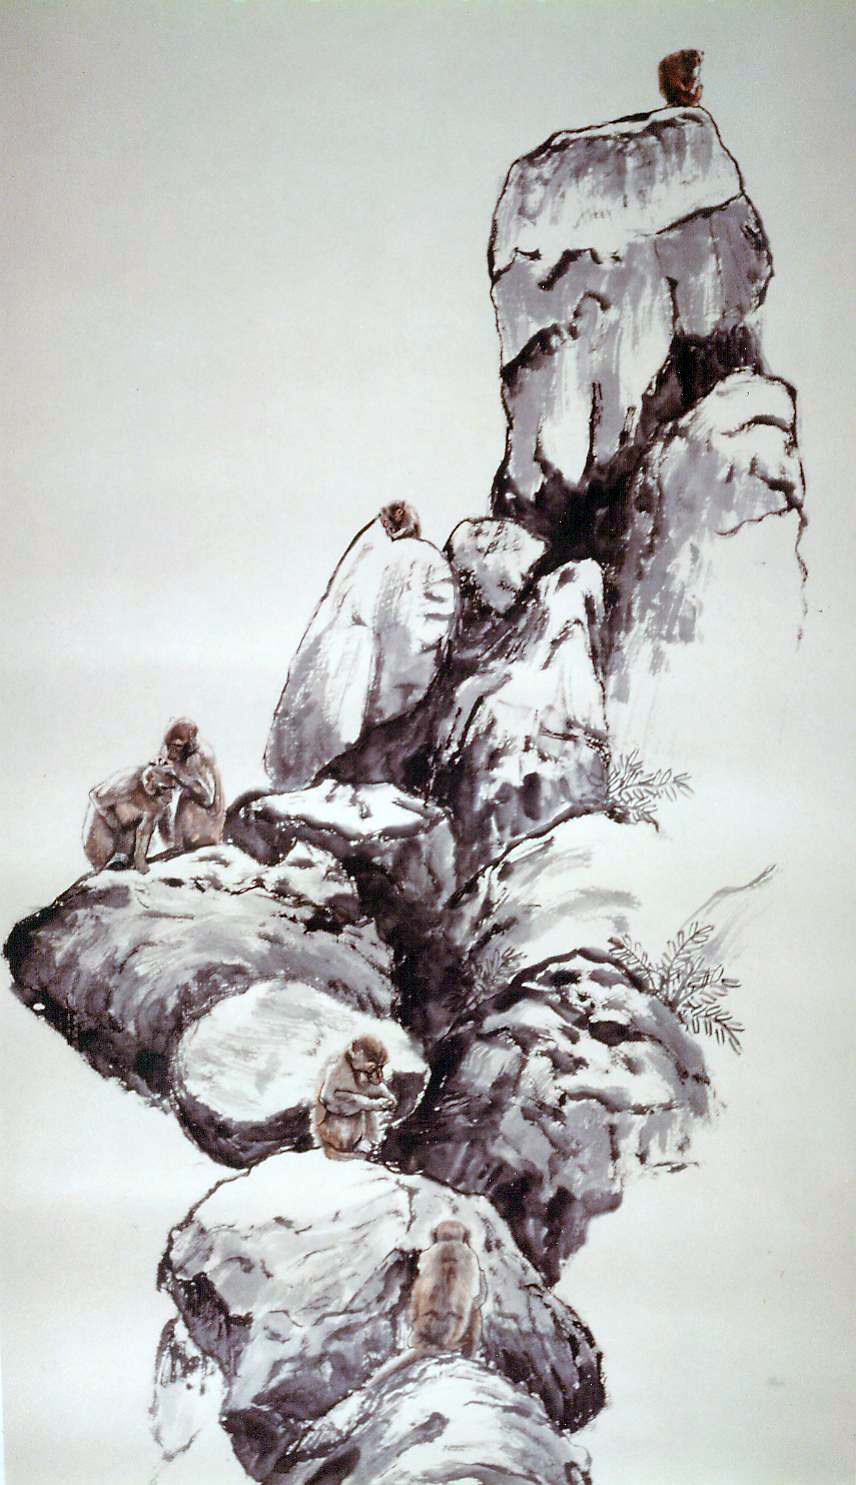 Monkey's Rock